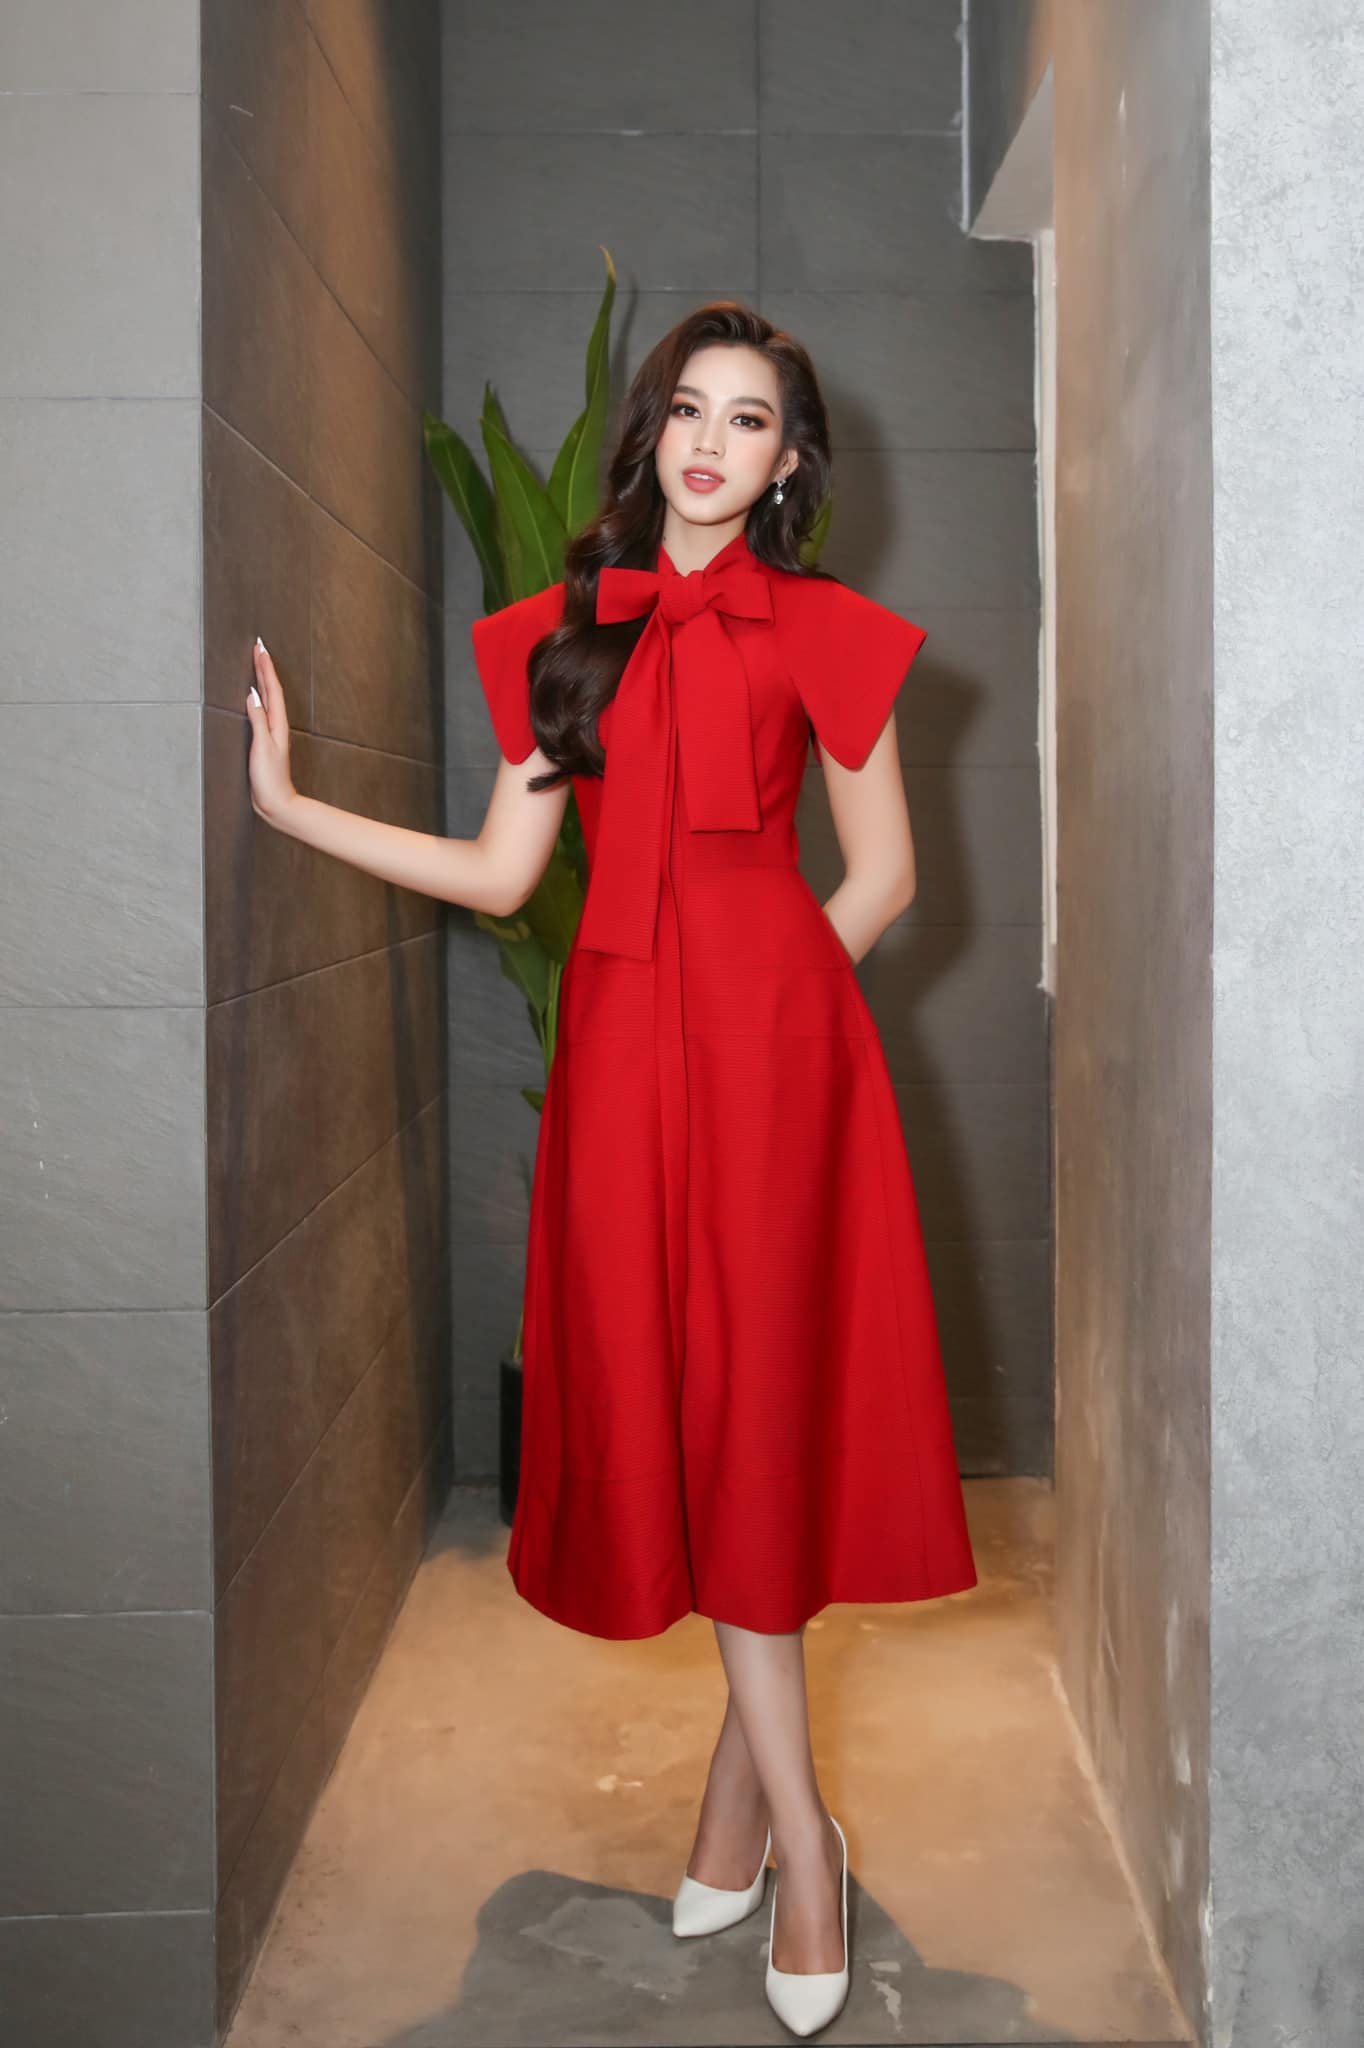 Trước đó, trong một buổi ghi hình phỏng vấn Đỗ Thị Hà chọn diện trang phục màu đỏ bắt mắt. chiếc váy mang phong cách thanh lịch